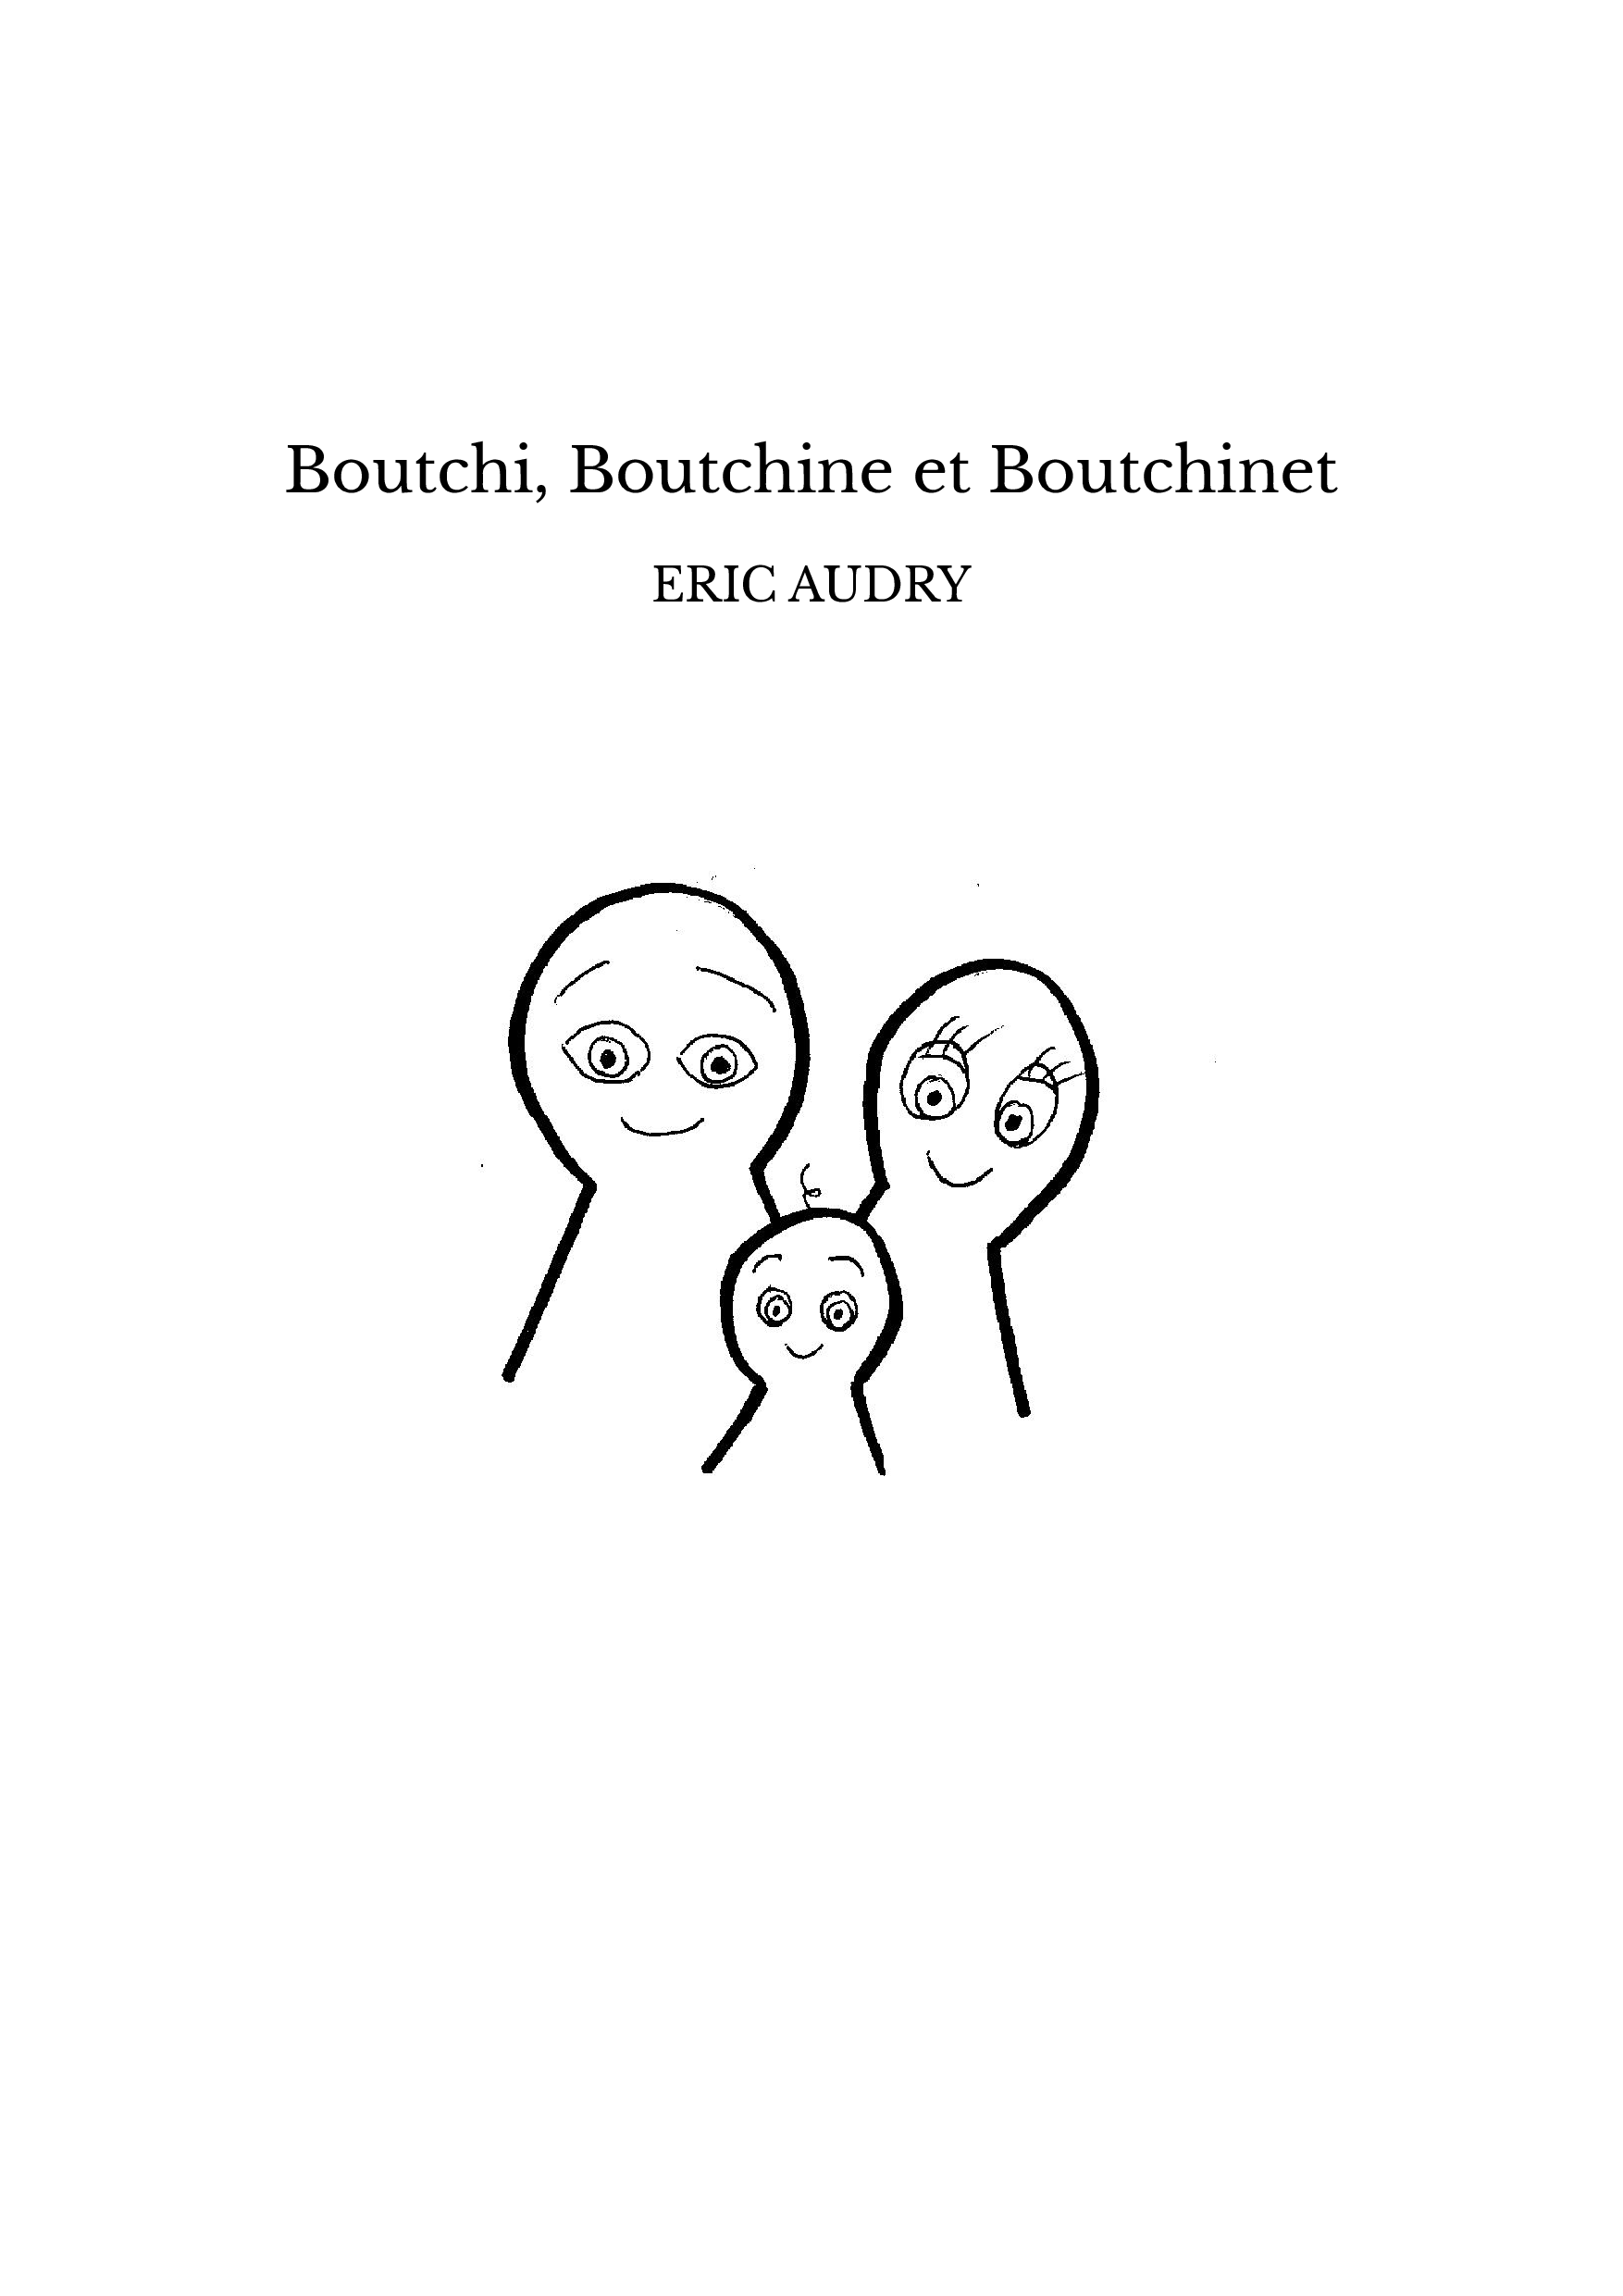 Boutchi, Boutchine et Boutchinet